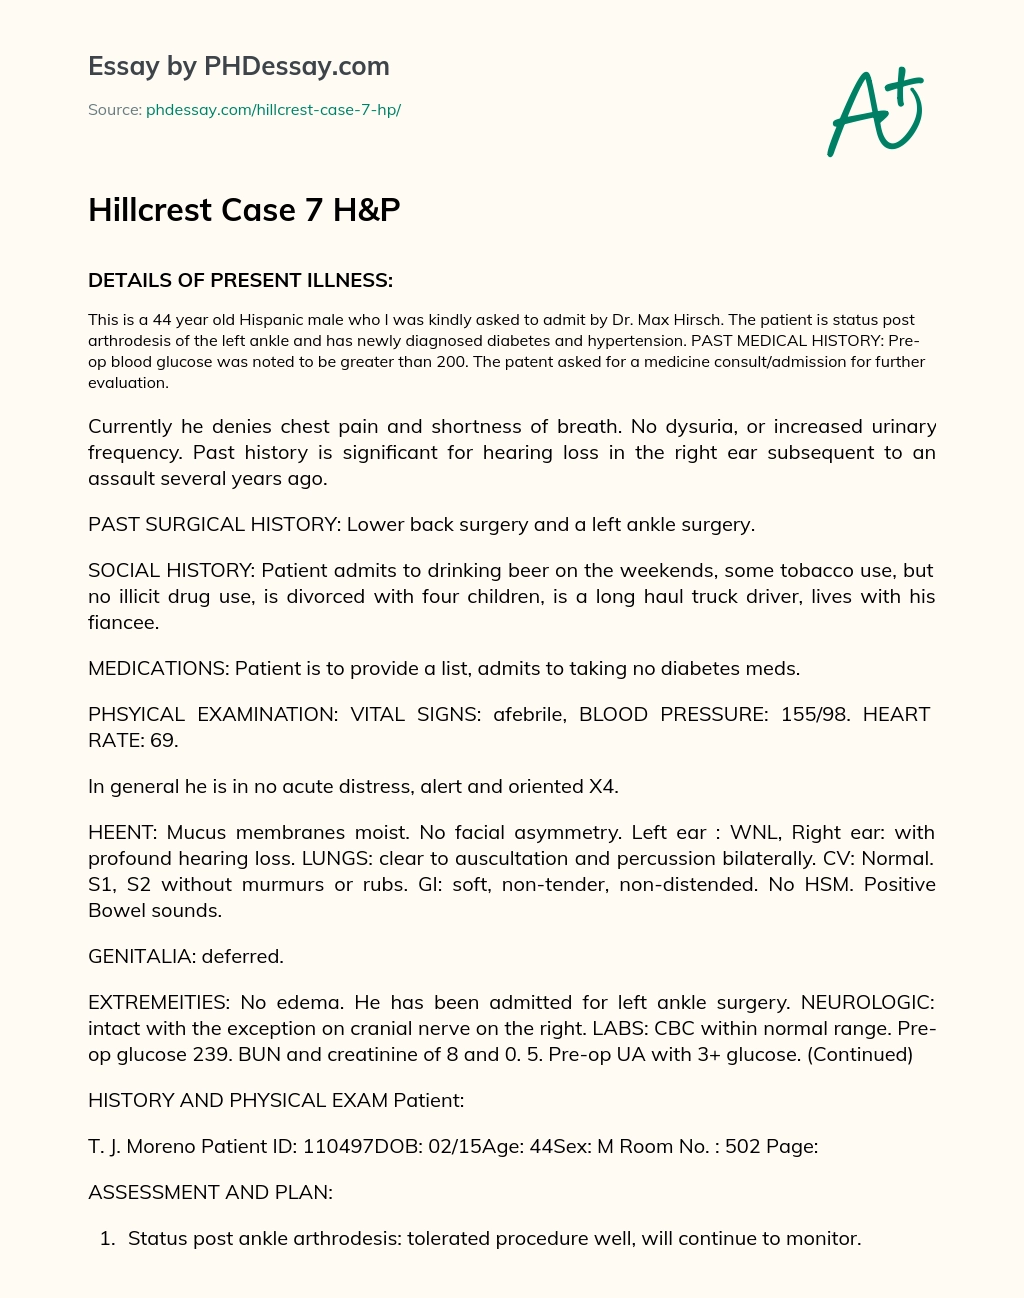 Hillcrest Case 7 H&P essay